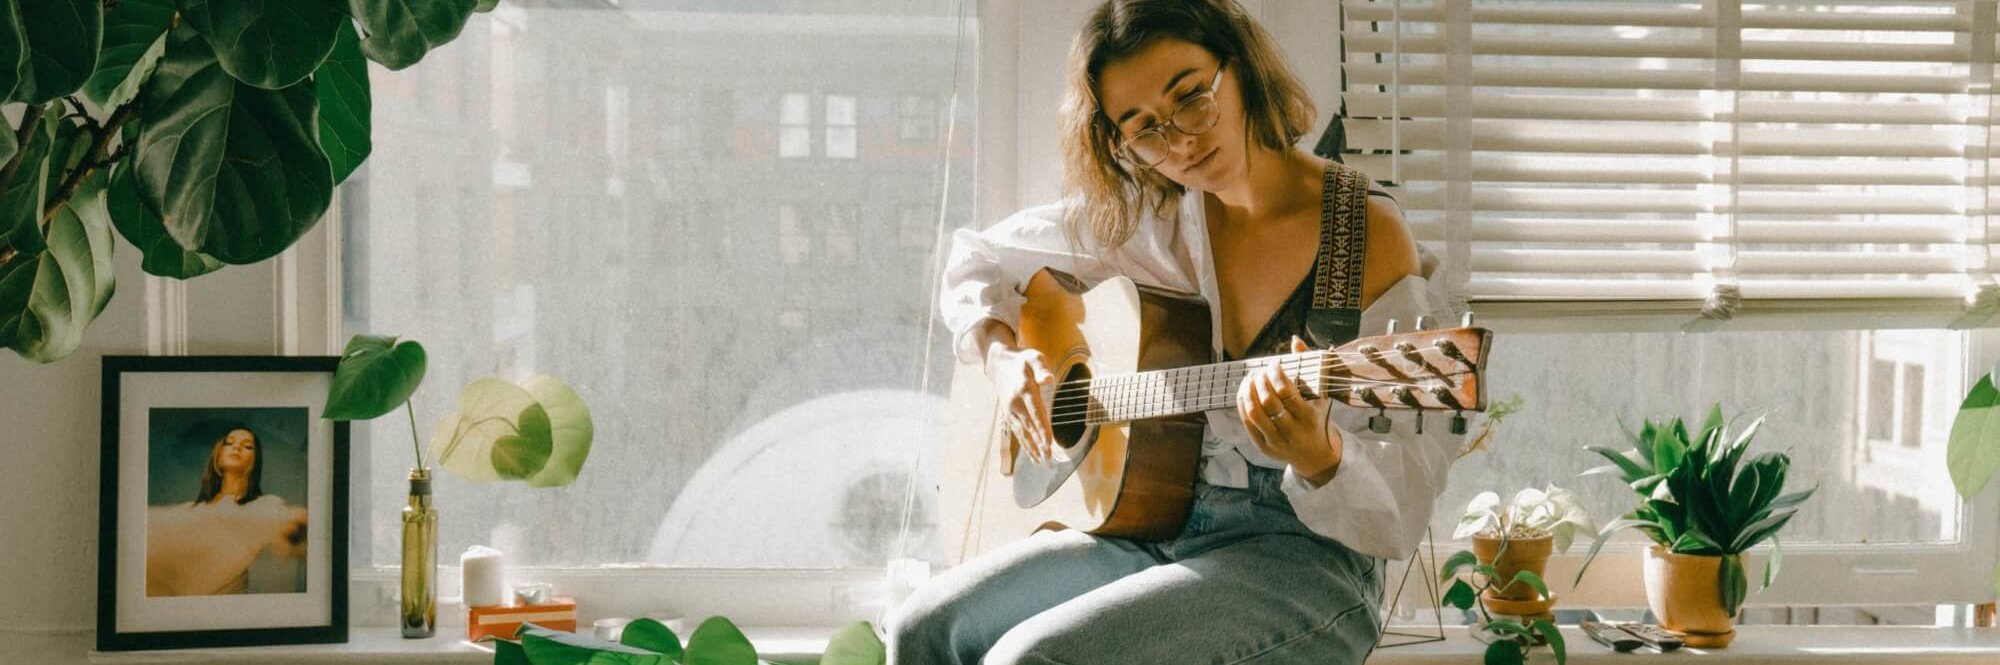 Eine Musikerin spielt Gitarre am Fenster. Viele Künstler:innen nutzen TikTok, um ihre Musik zu vermarkten.